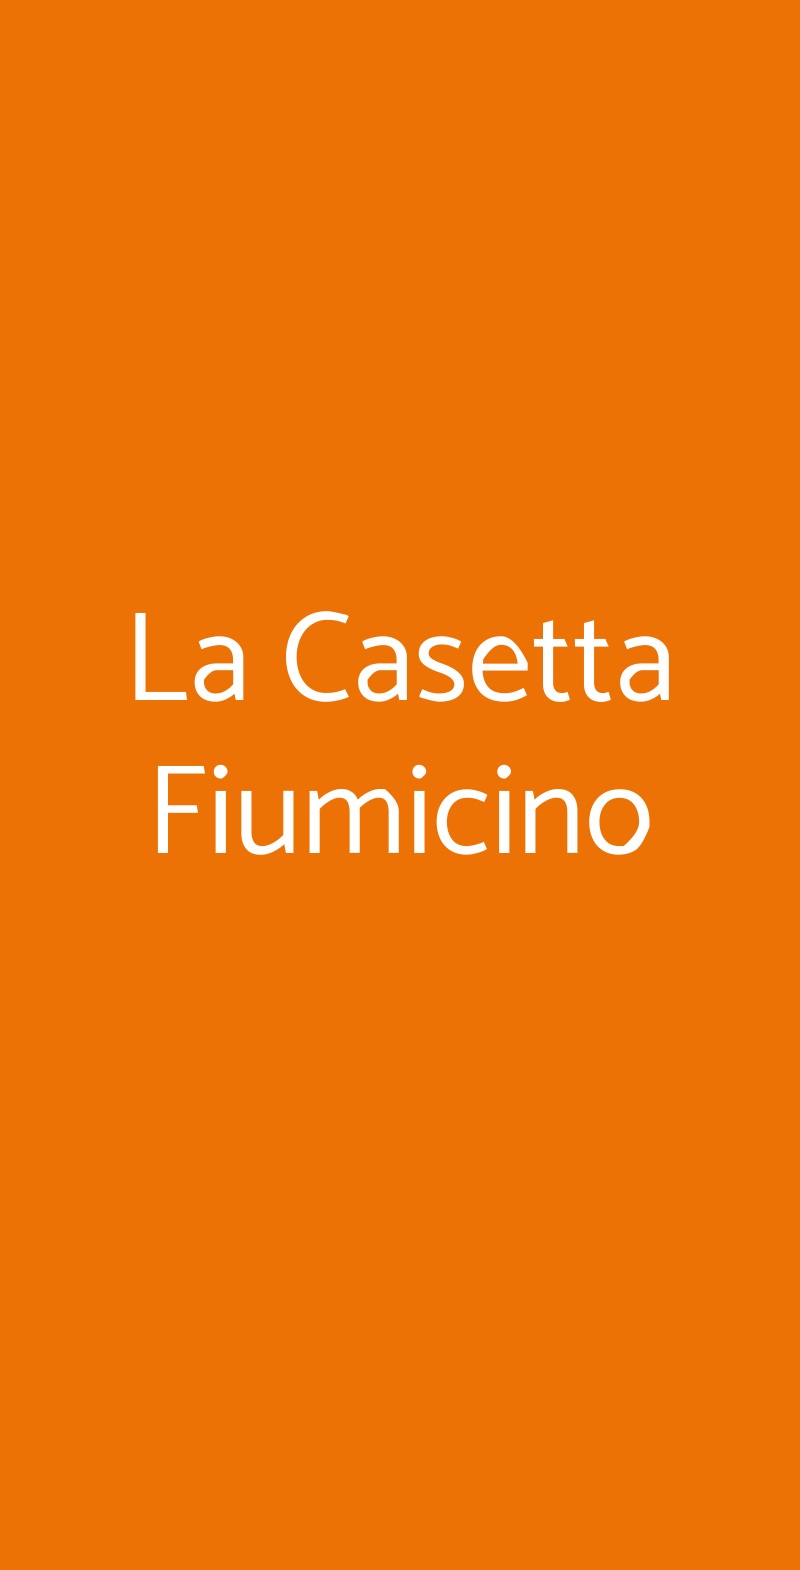 La Casetta Fiumicino Fiumicino menù 1 pagina